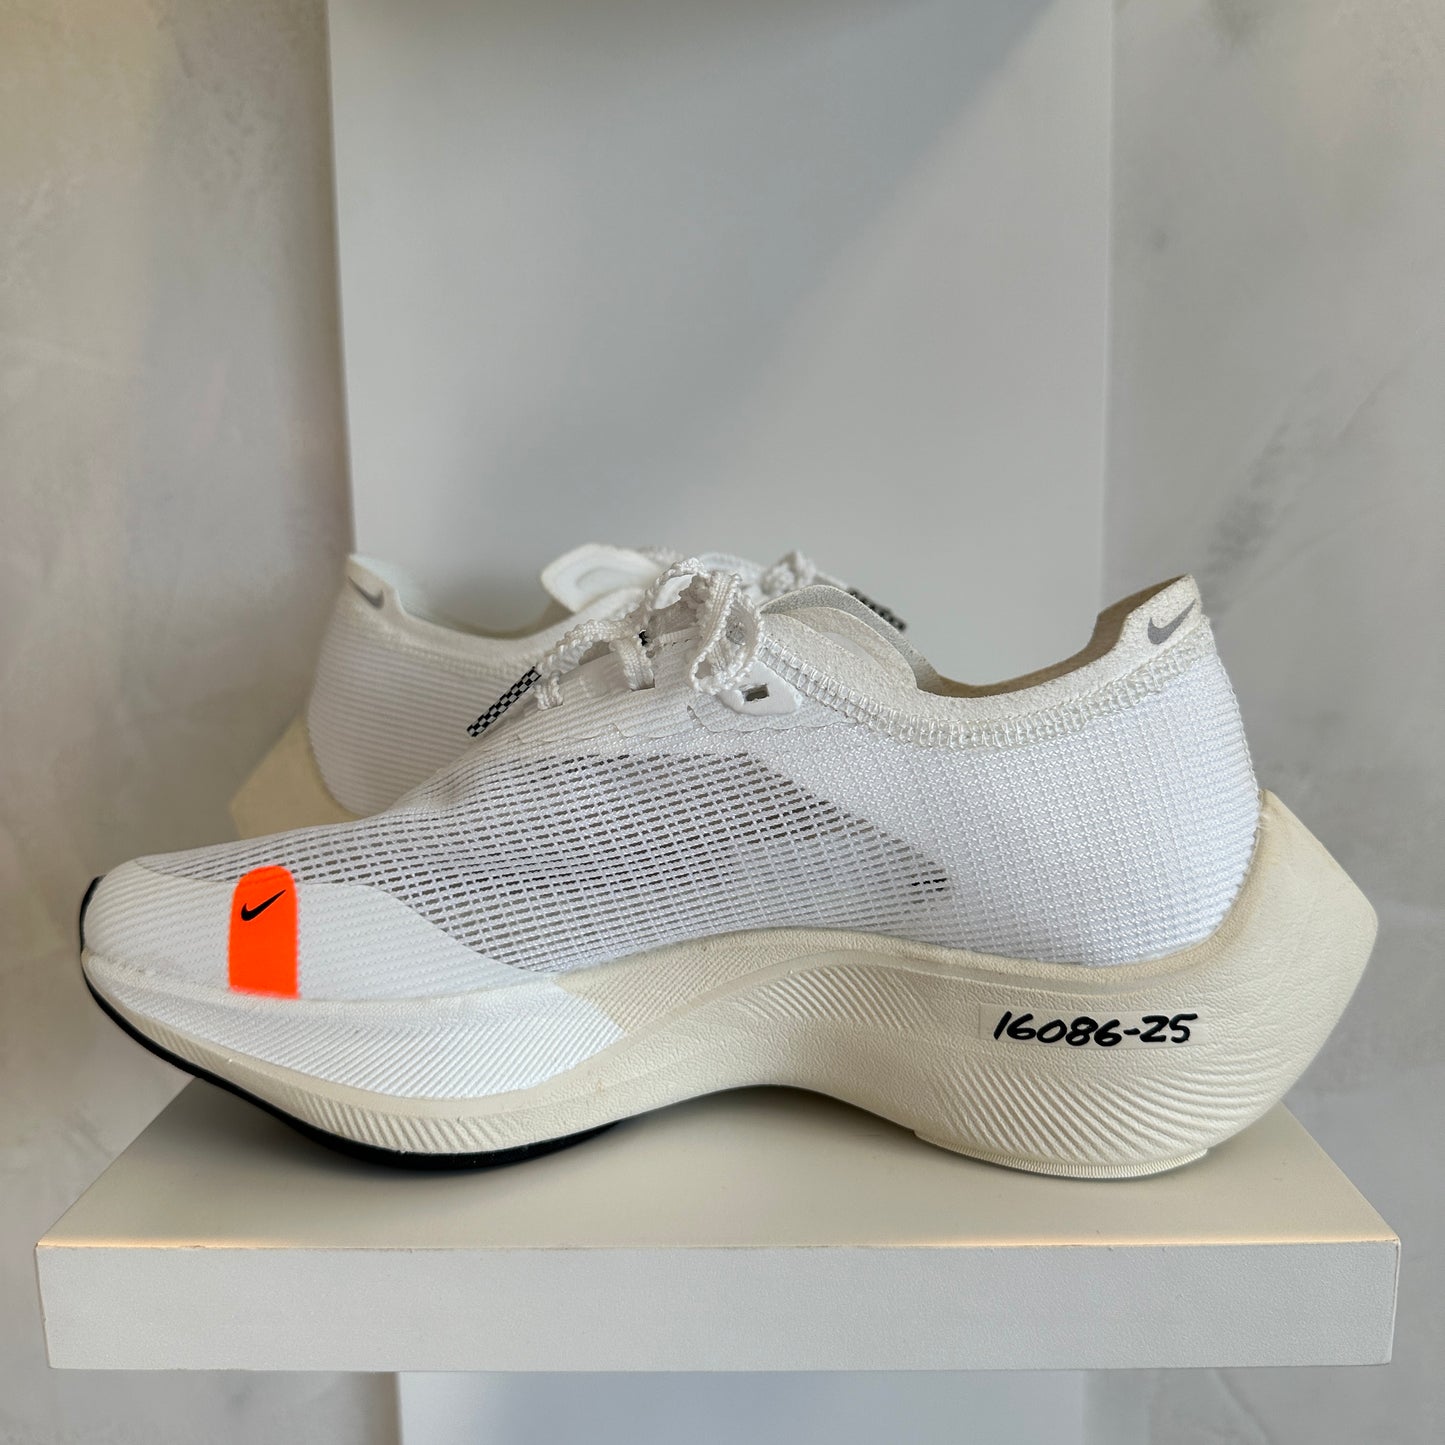 Nike ZoomX Vaporfly Next% 2 White Black (Pronta Entrega)